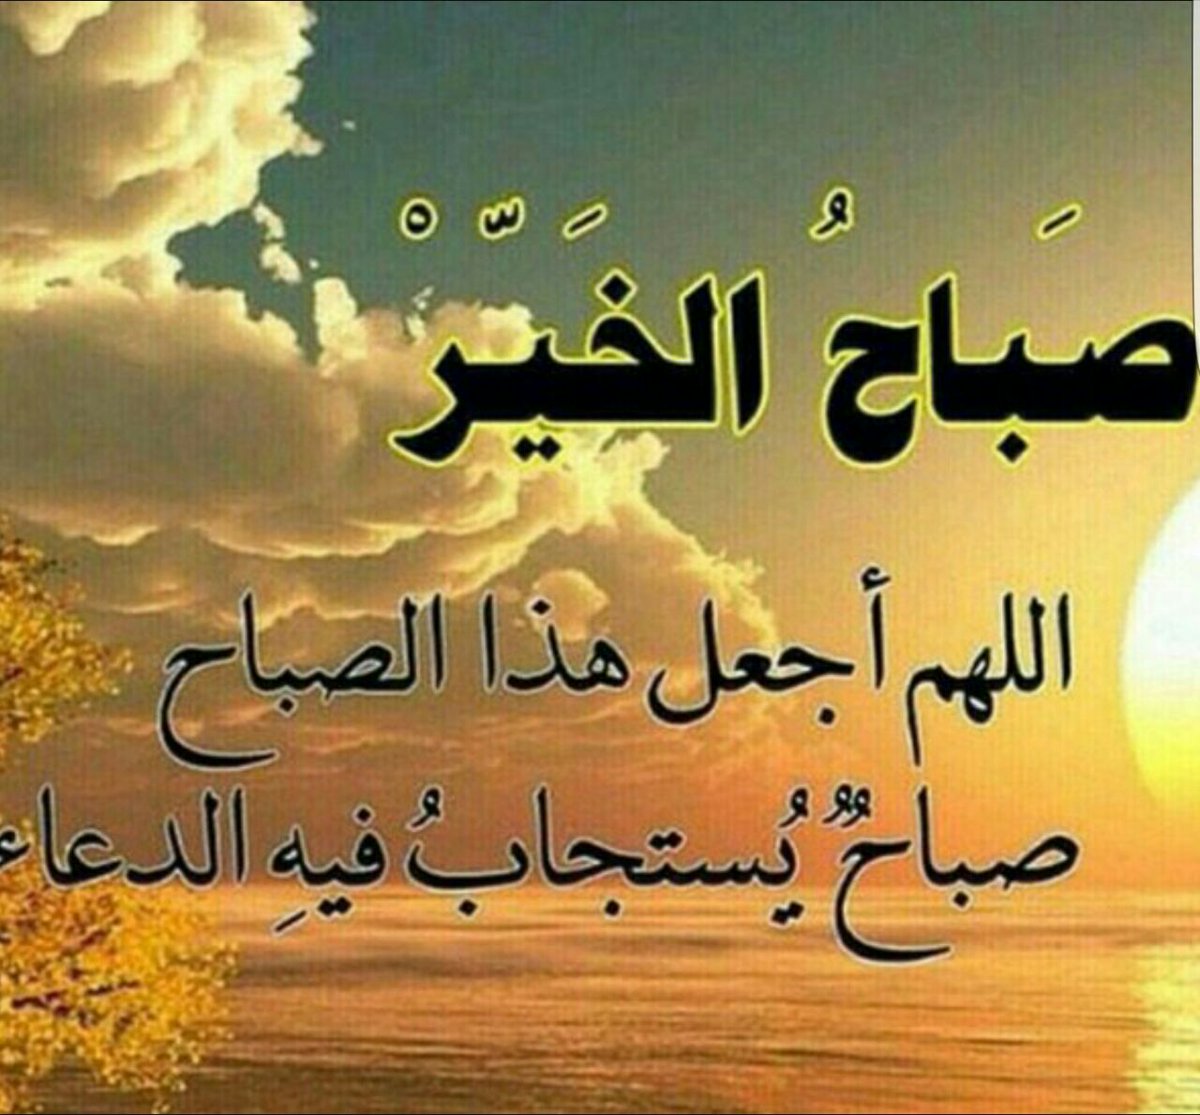 صباح الخير مع دعاء جميل اجمل الادعيه والعبارات عن صباح الخير - صور حزينه